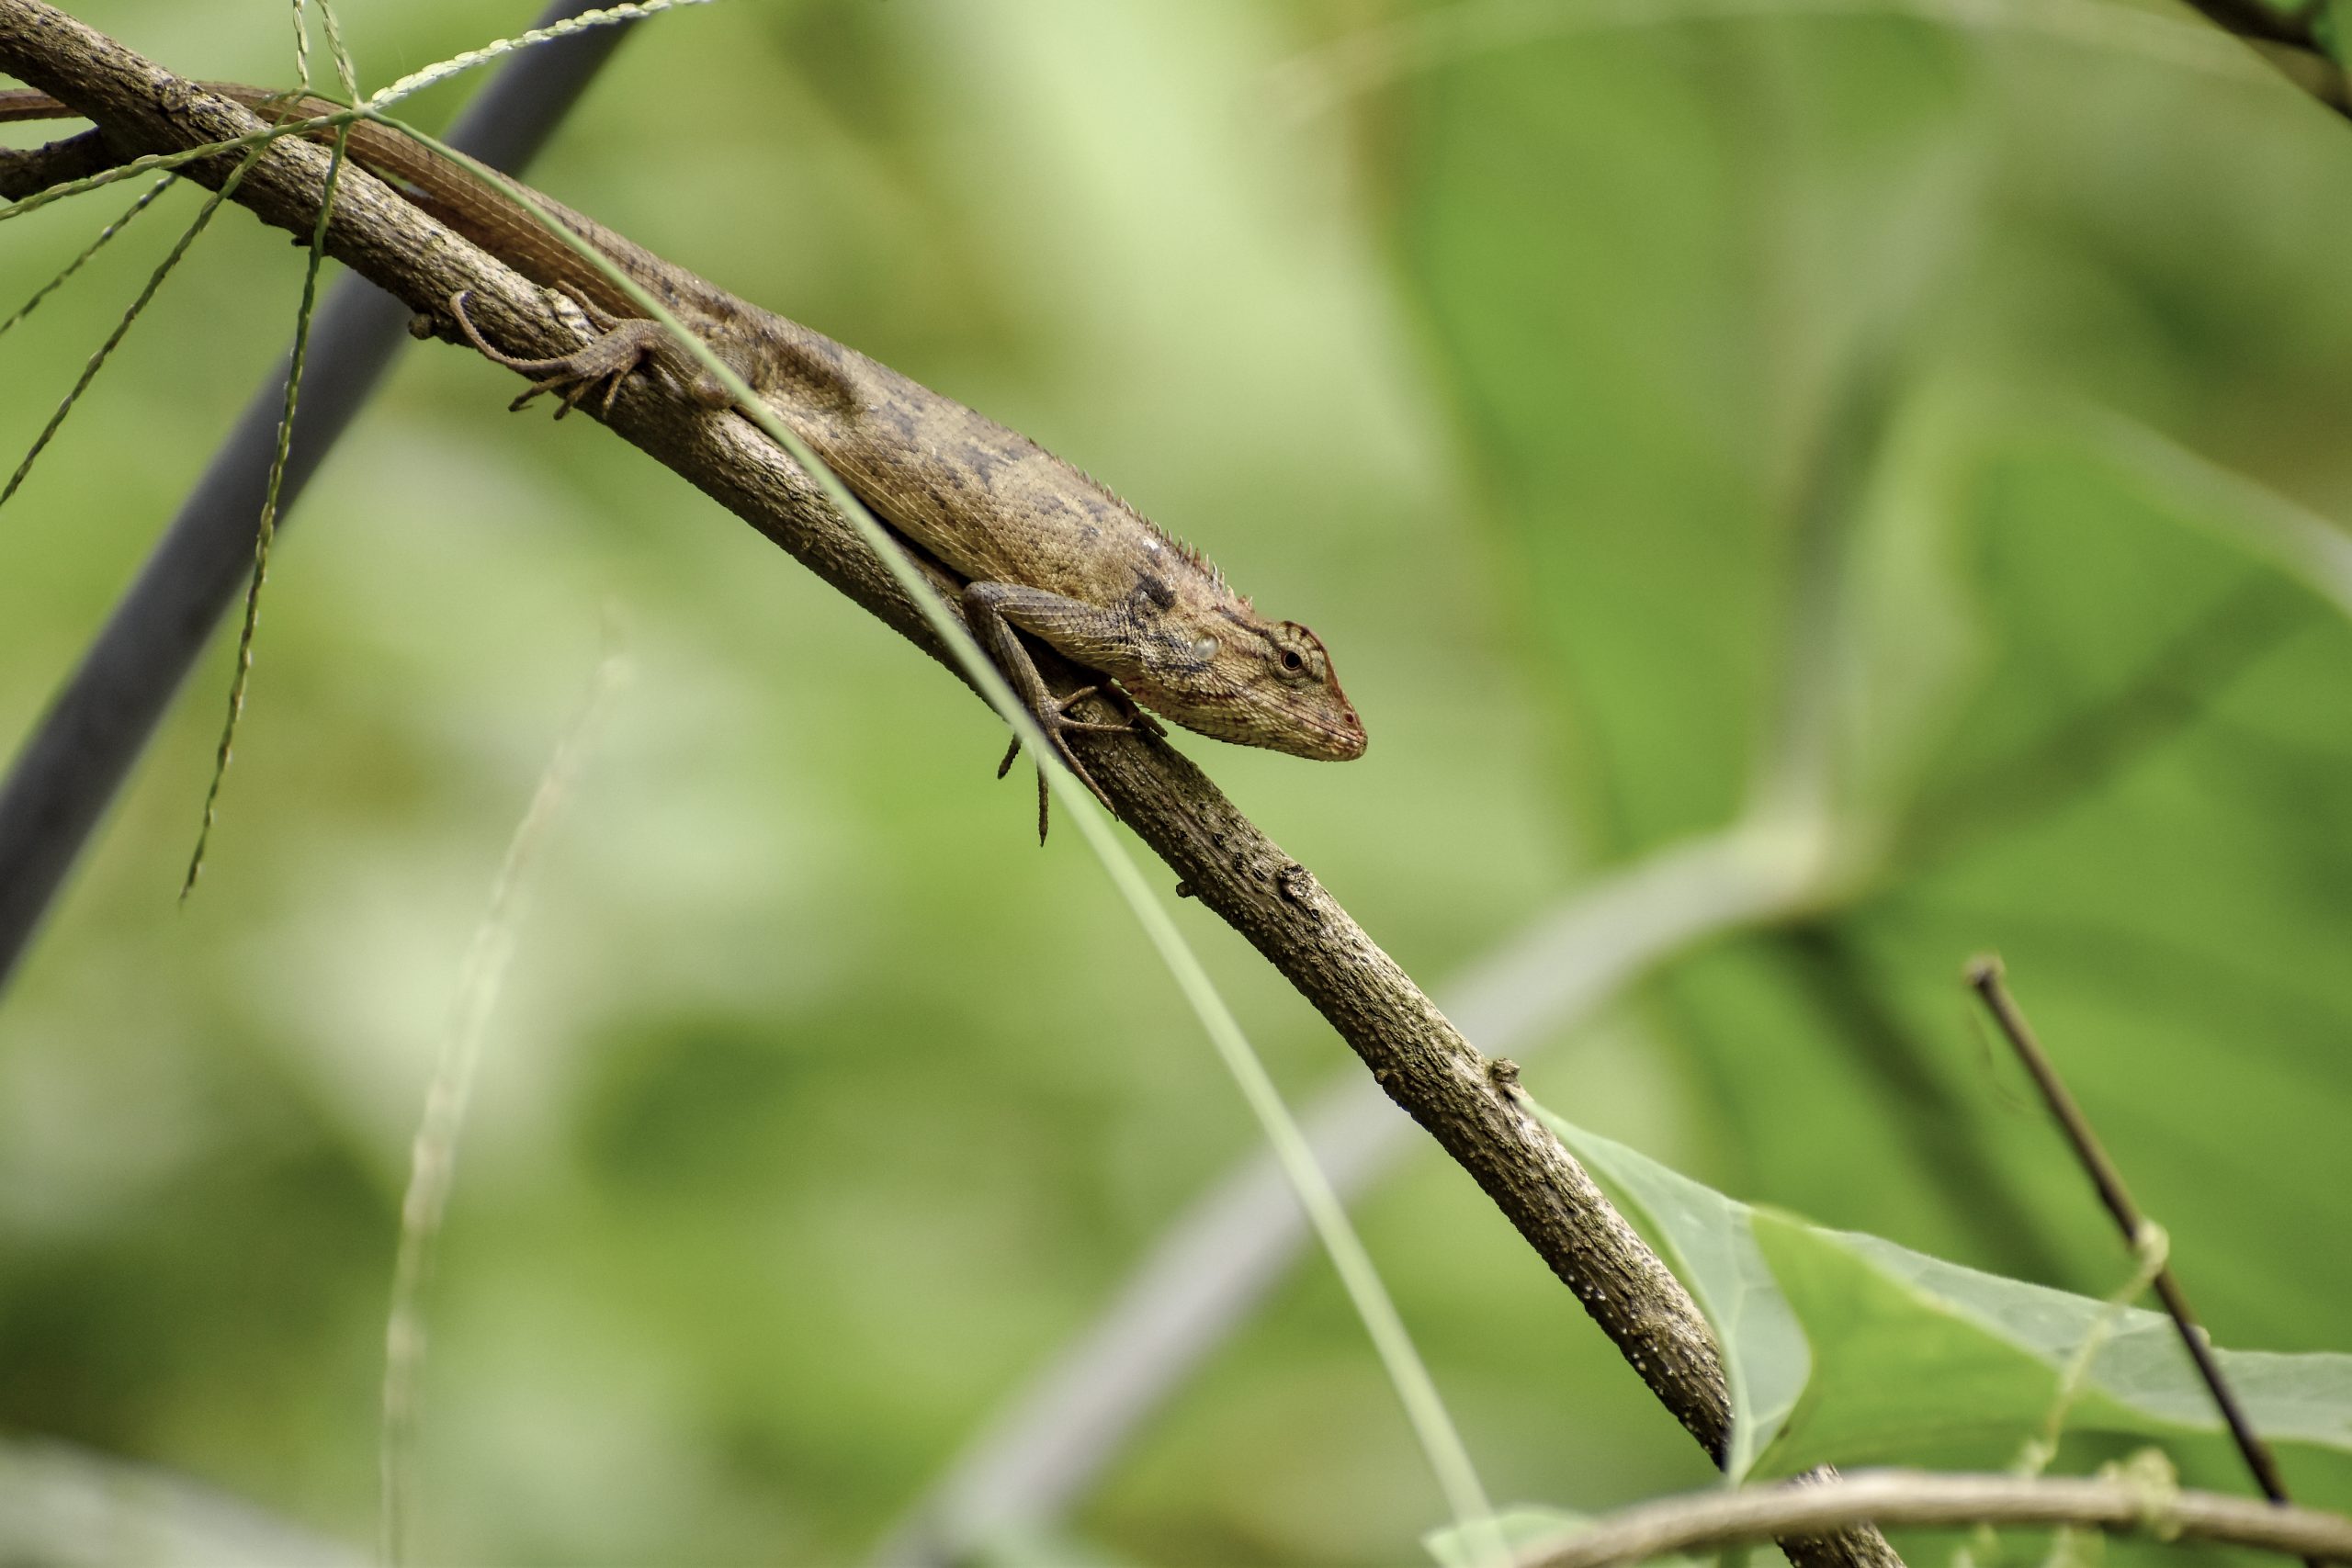 A lizard on a branch